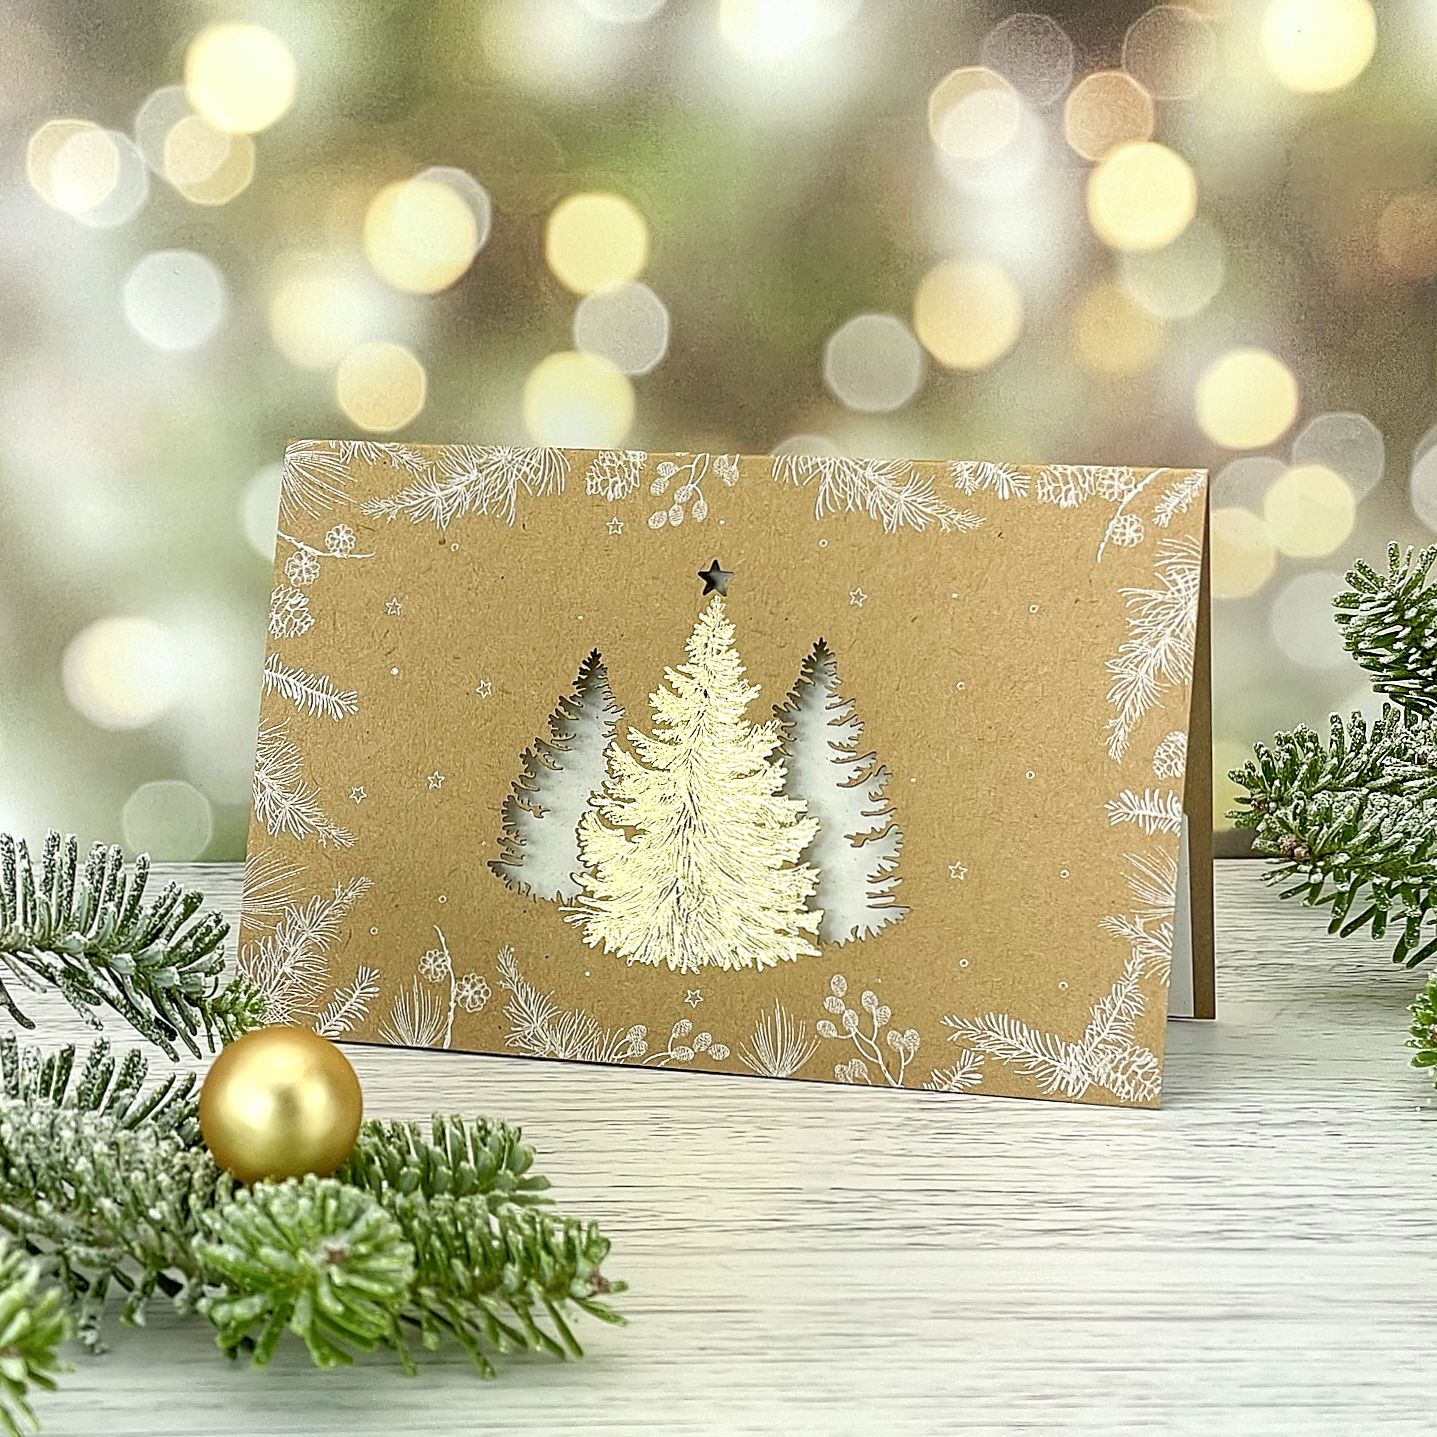 Novoroční–vánoční přání vyrobené z recyklovaného papíru s motivem trojice stromů provedených kombinací zlaté ražby a laserového výseku, otevírací, formát 148 × 105 mm.